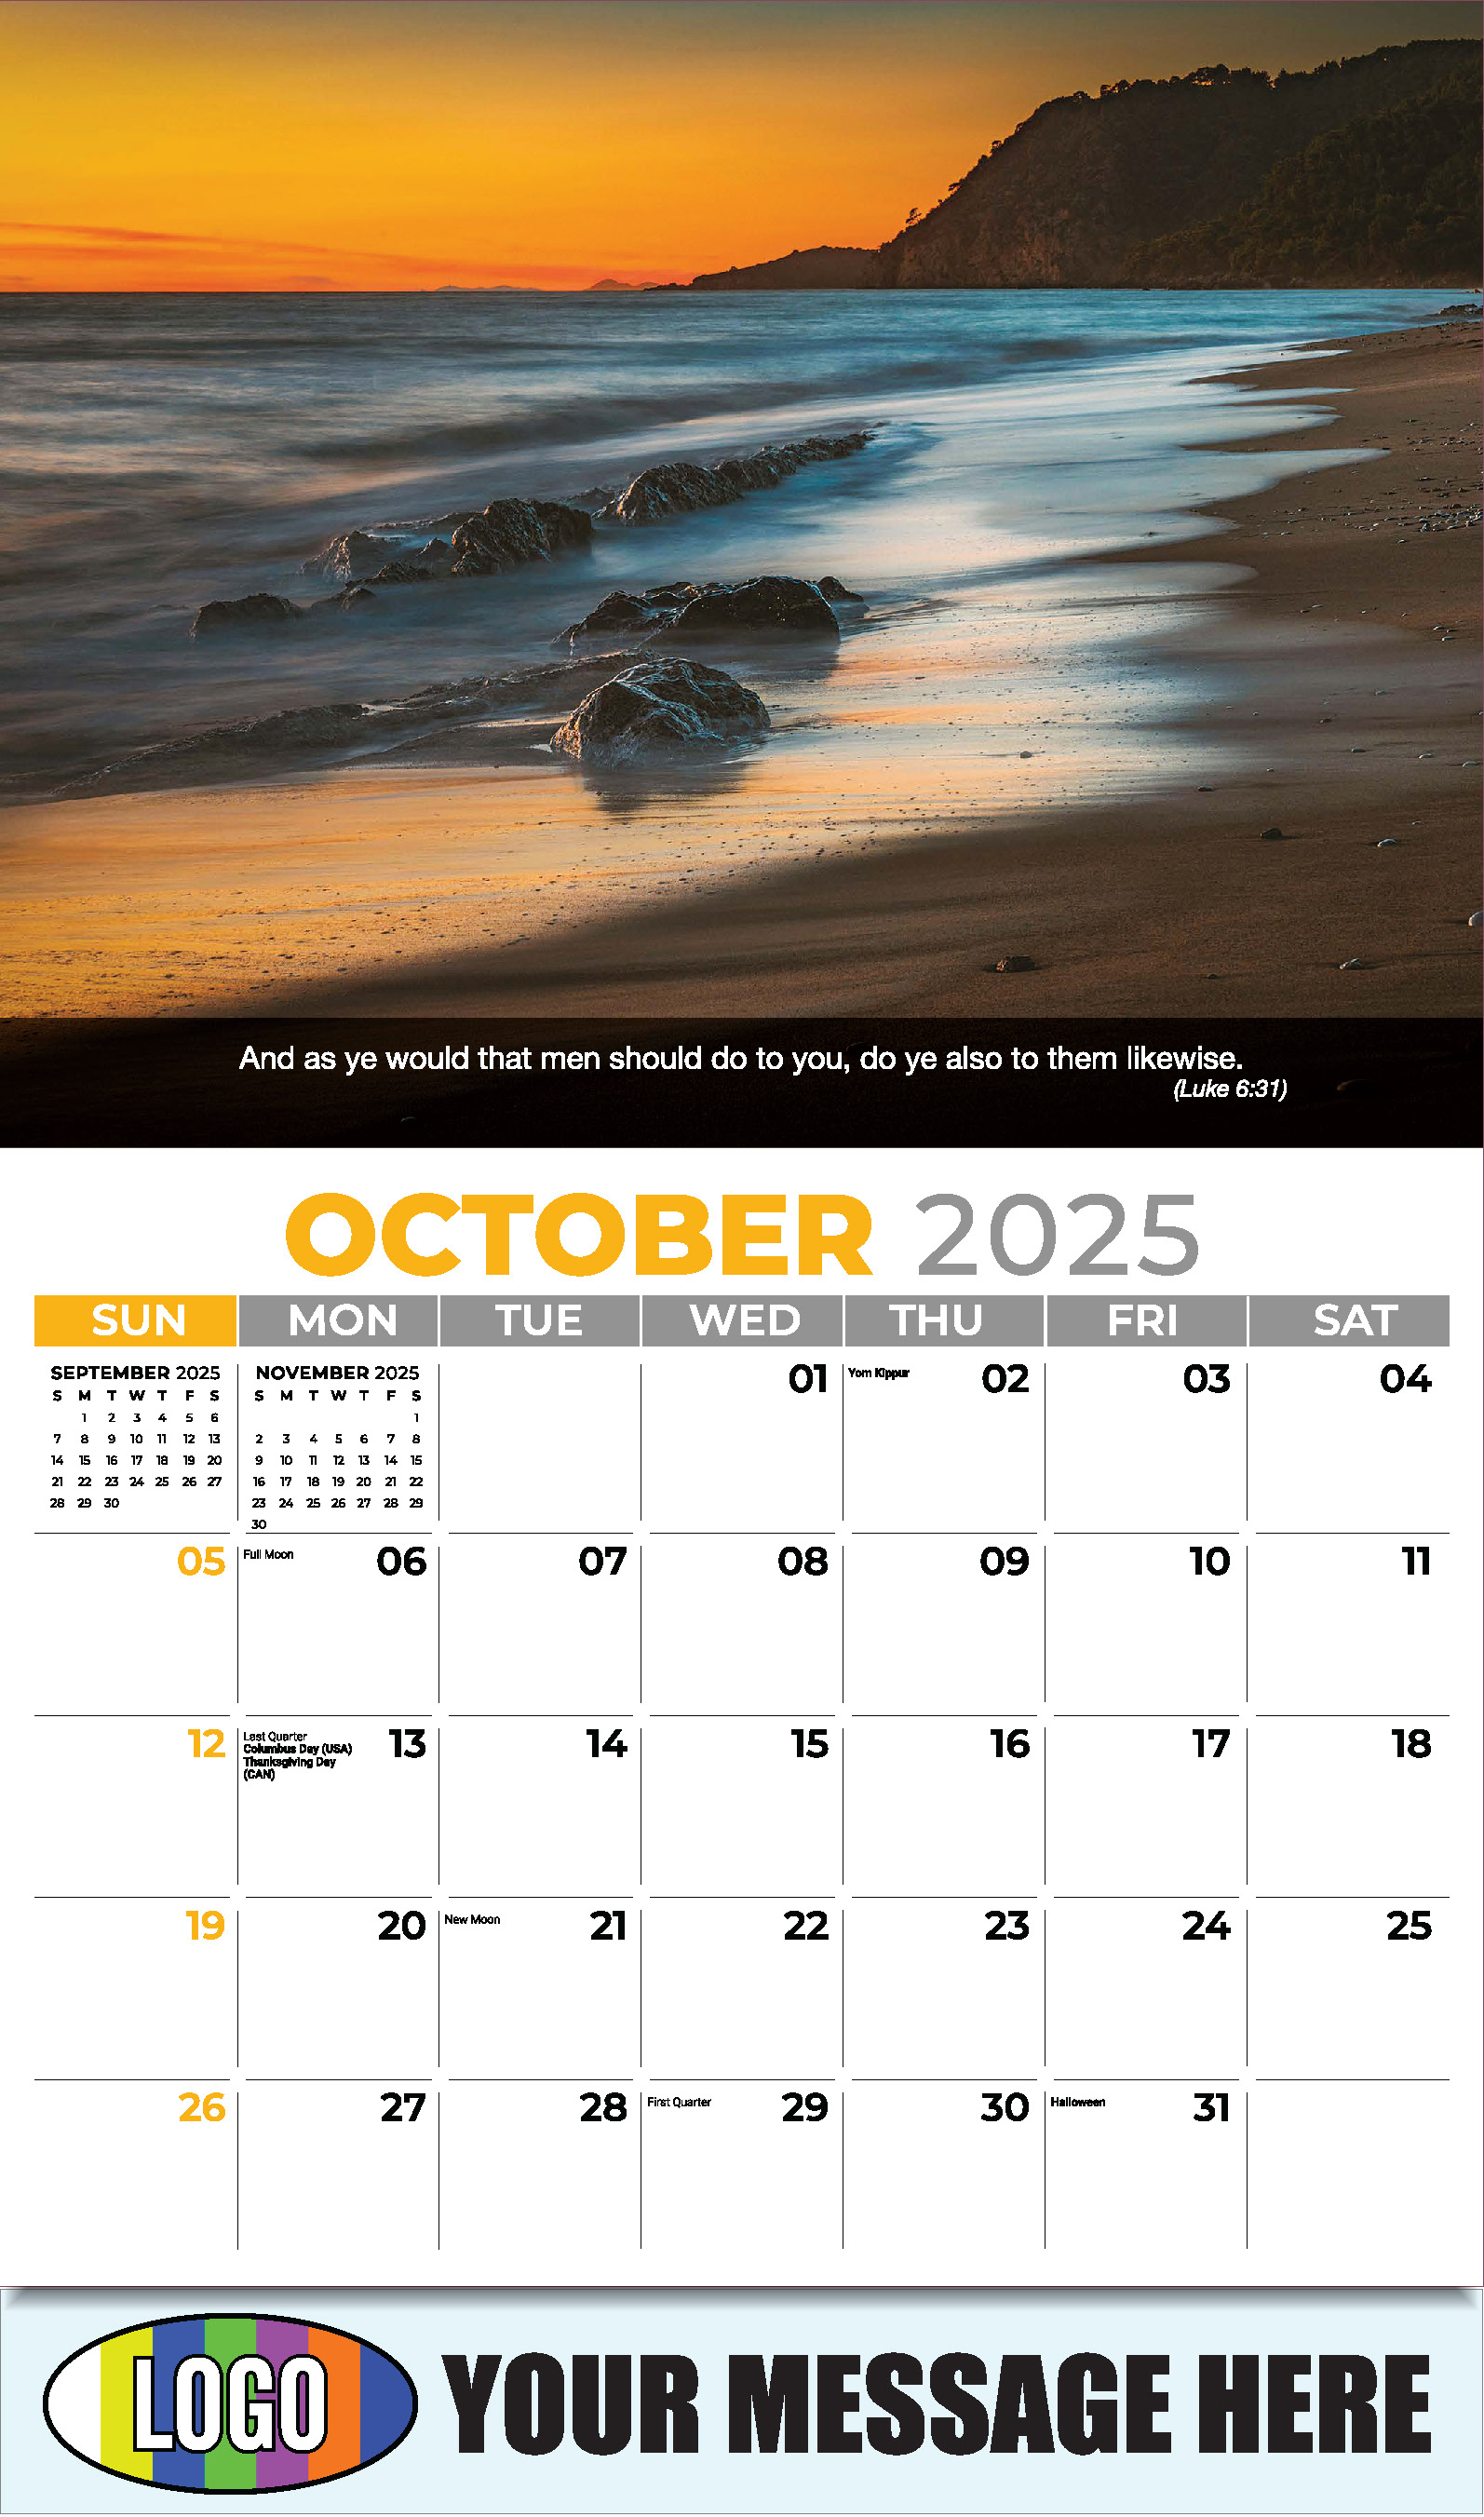 Faith Passages 2025 Christian Business Advertising Calendar - October